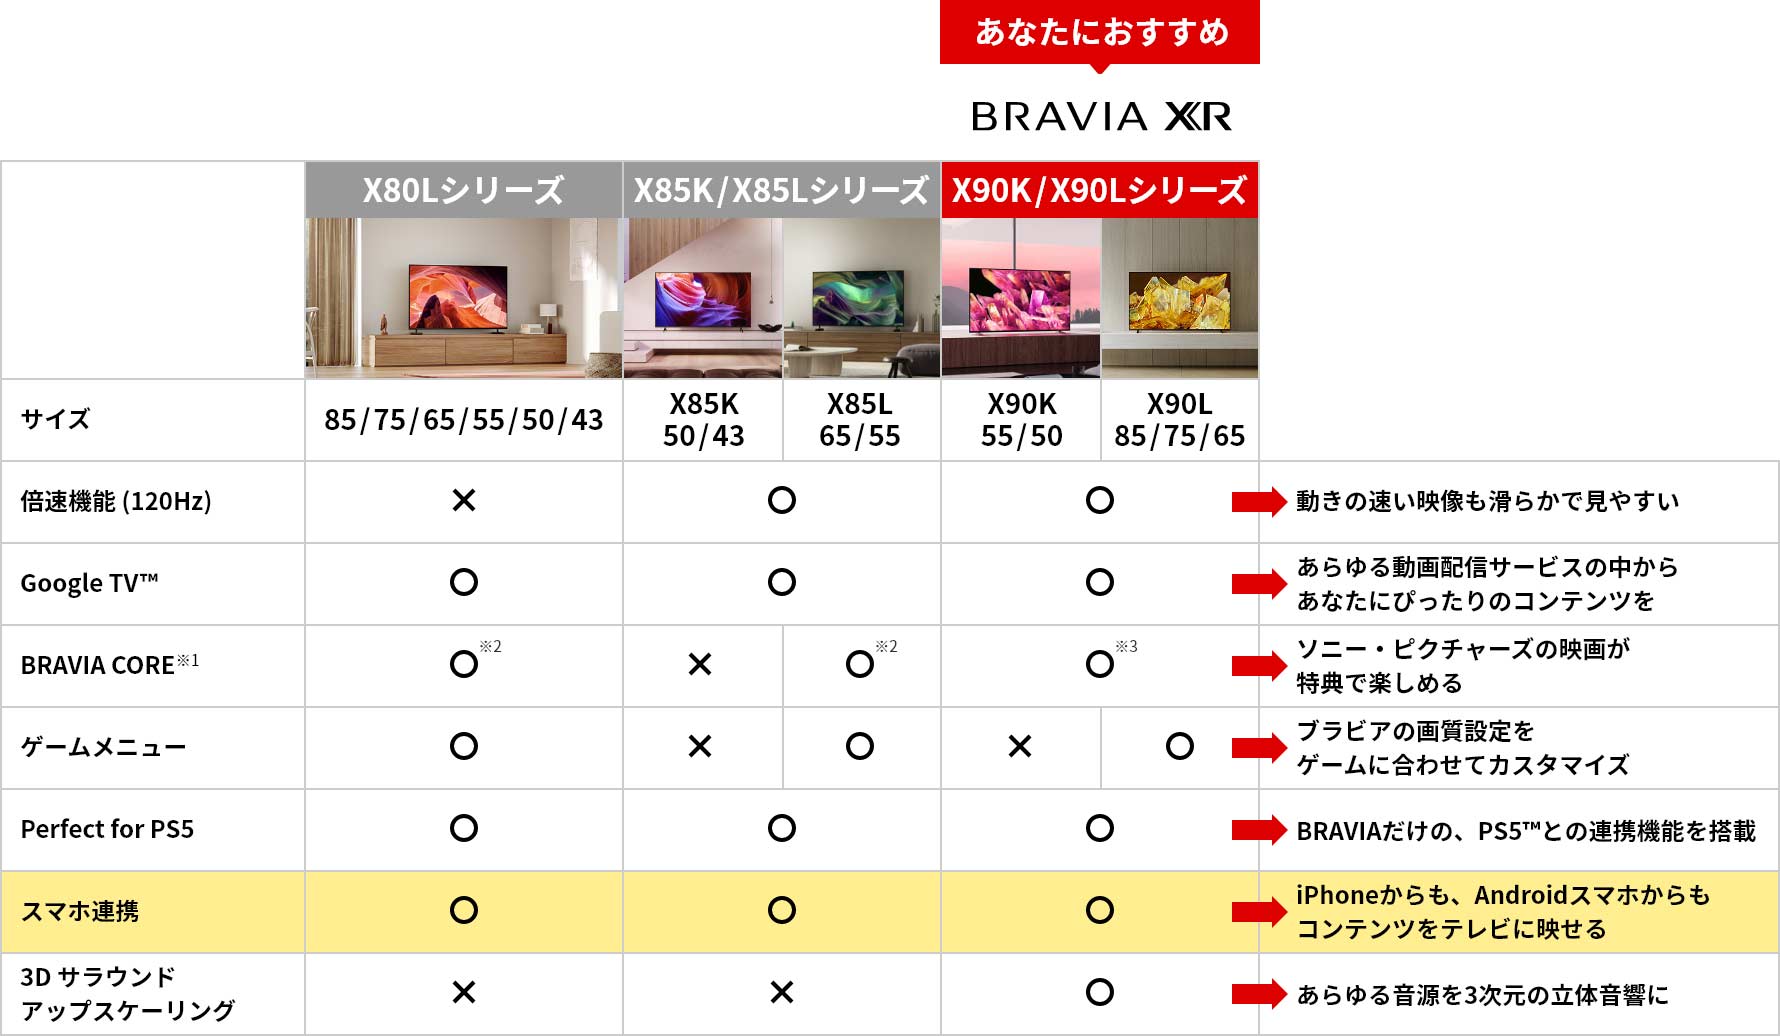 X80Lシリーズ、X85K/X85Lシリーズ、X90K/X90Lシリーズとの比較表